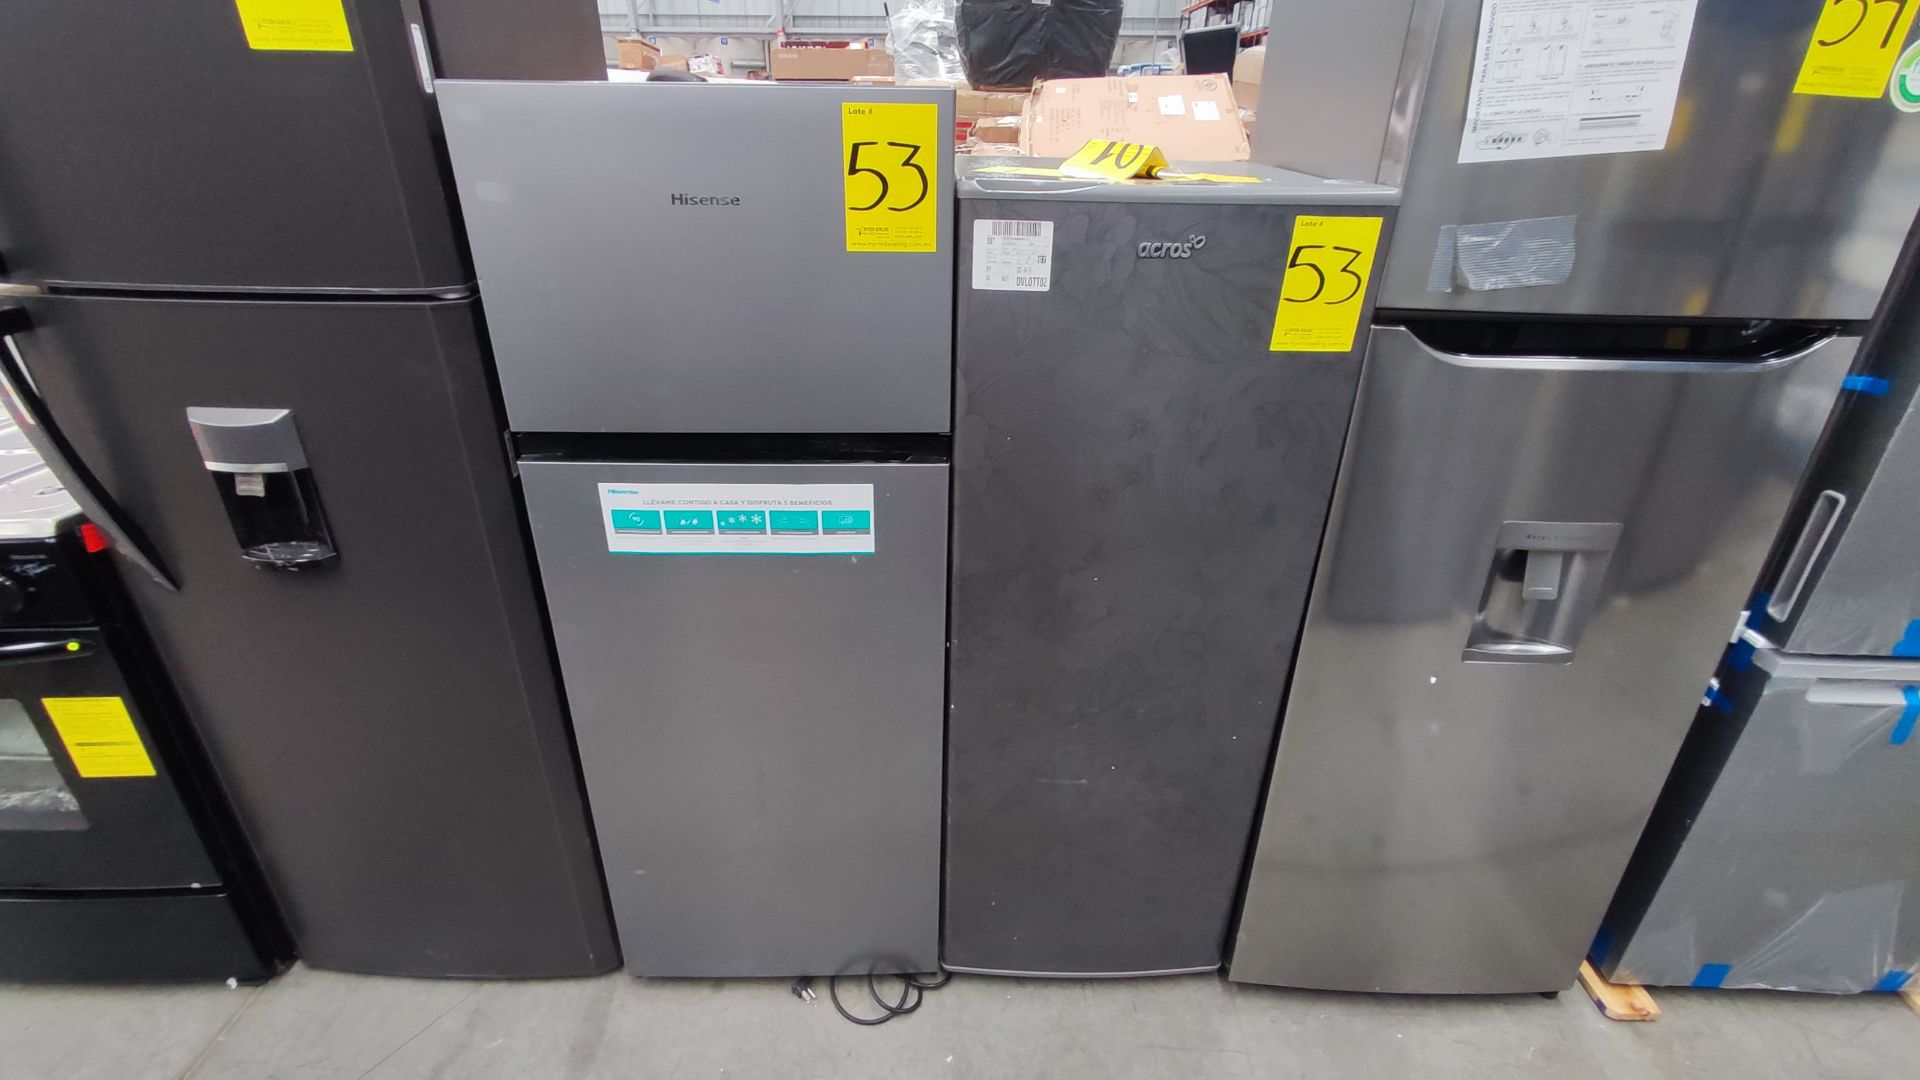 Lote de 2 Refrigeradores, Contiene; 1 Refrigerador Marca Hisense, Modelo BCYNY, Serie 1B0205Z0080JB